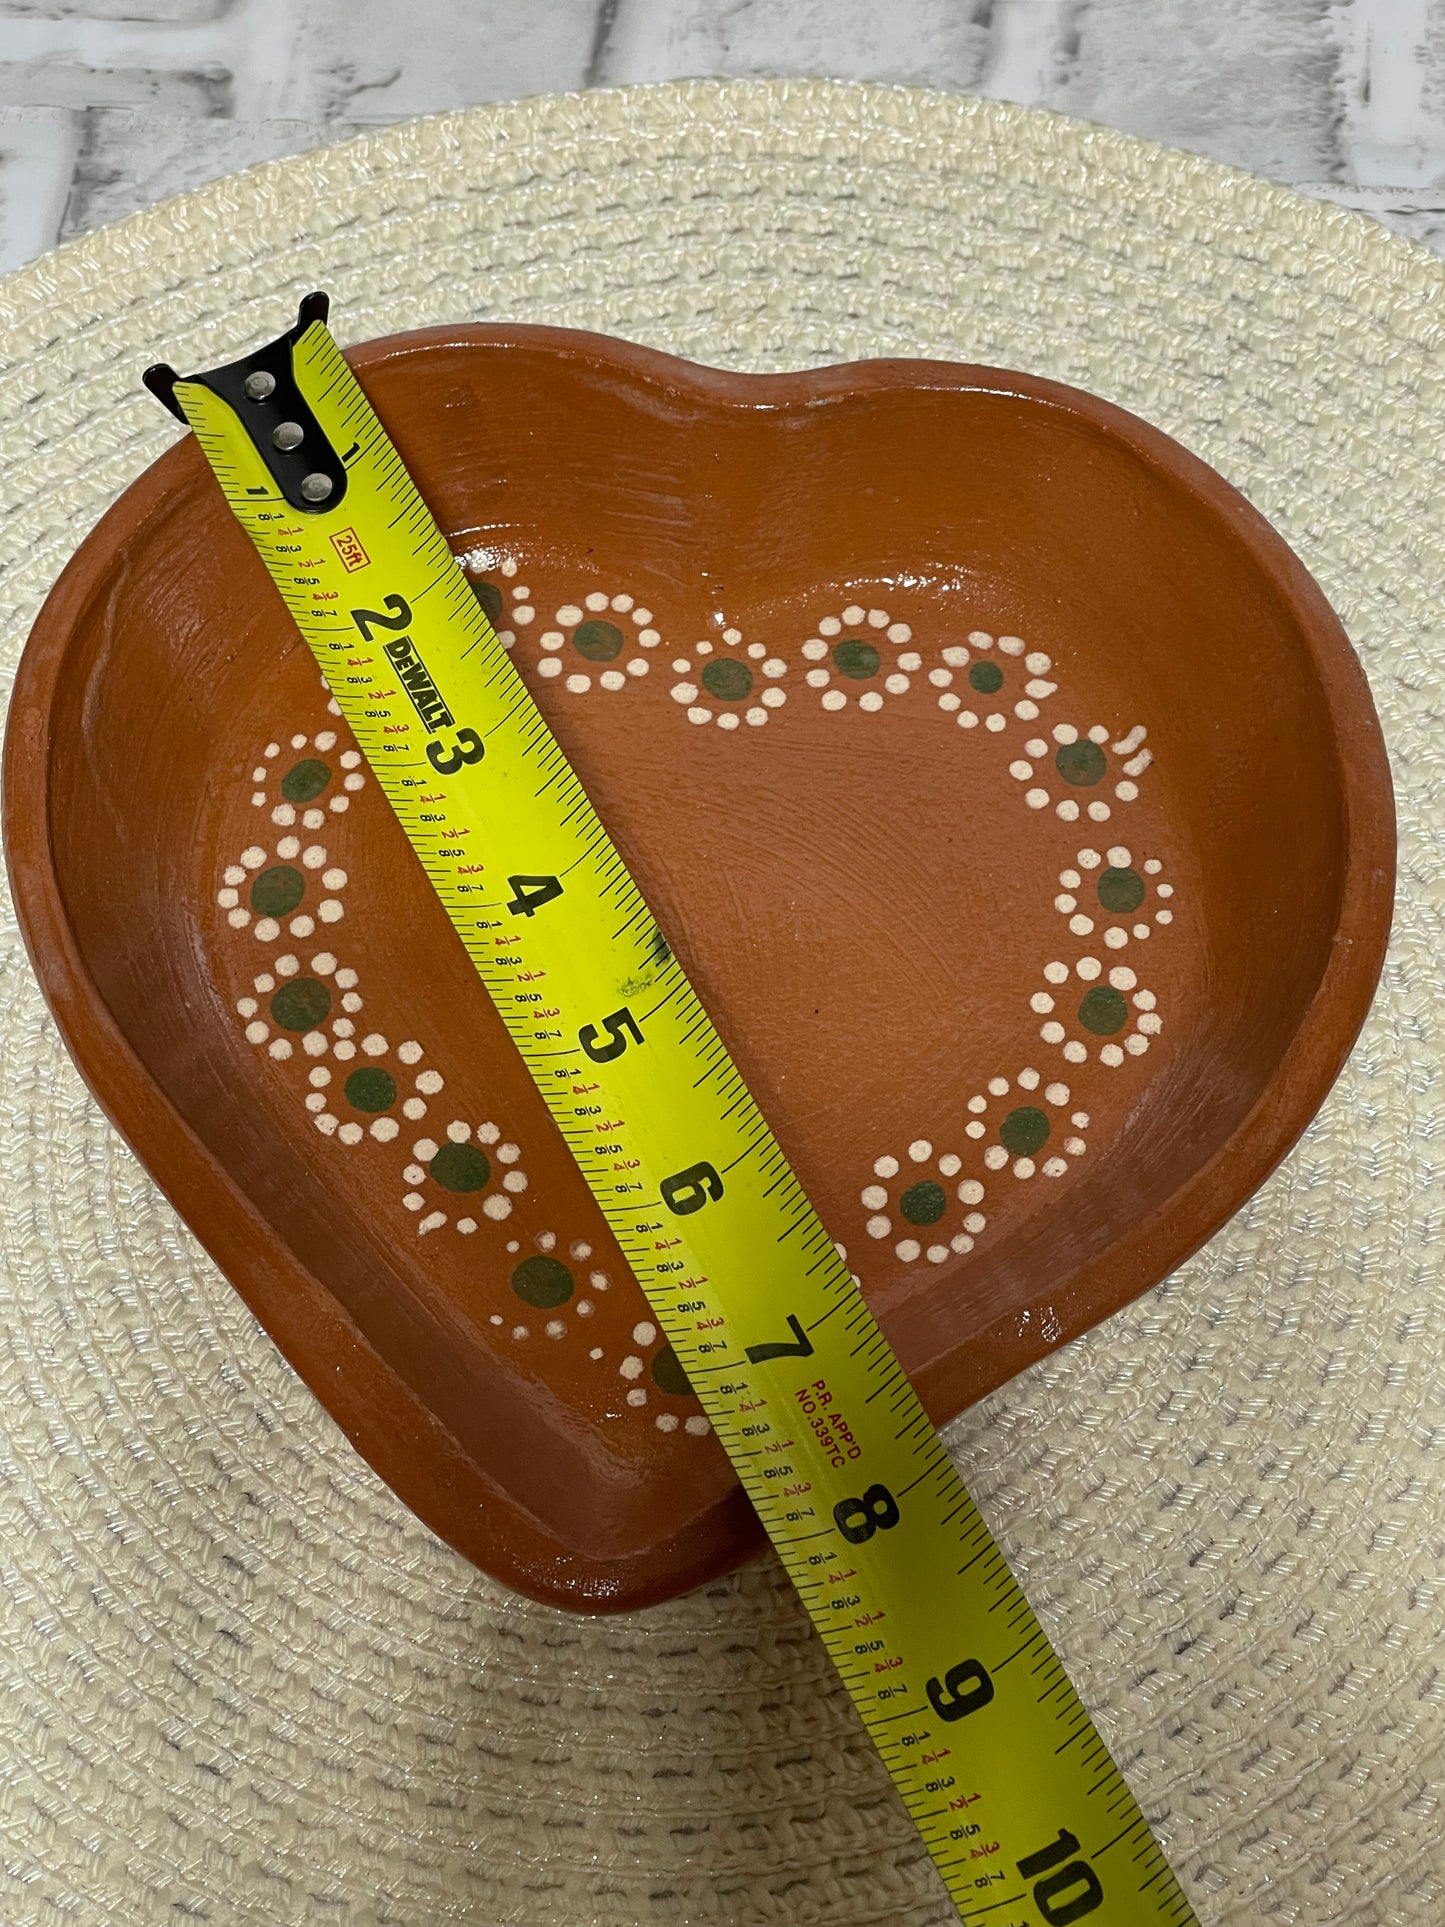 2pc-Plato corazon de barro/terracota heart shape plate